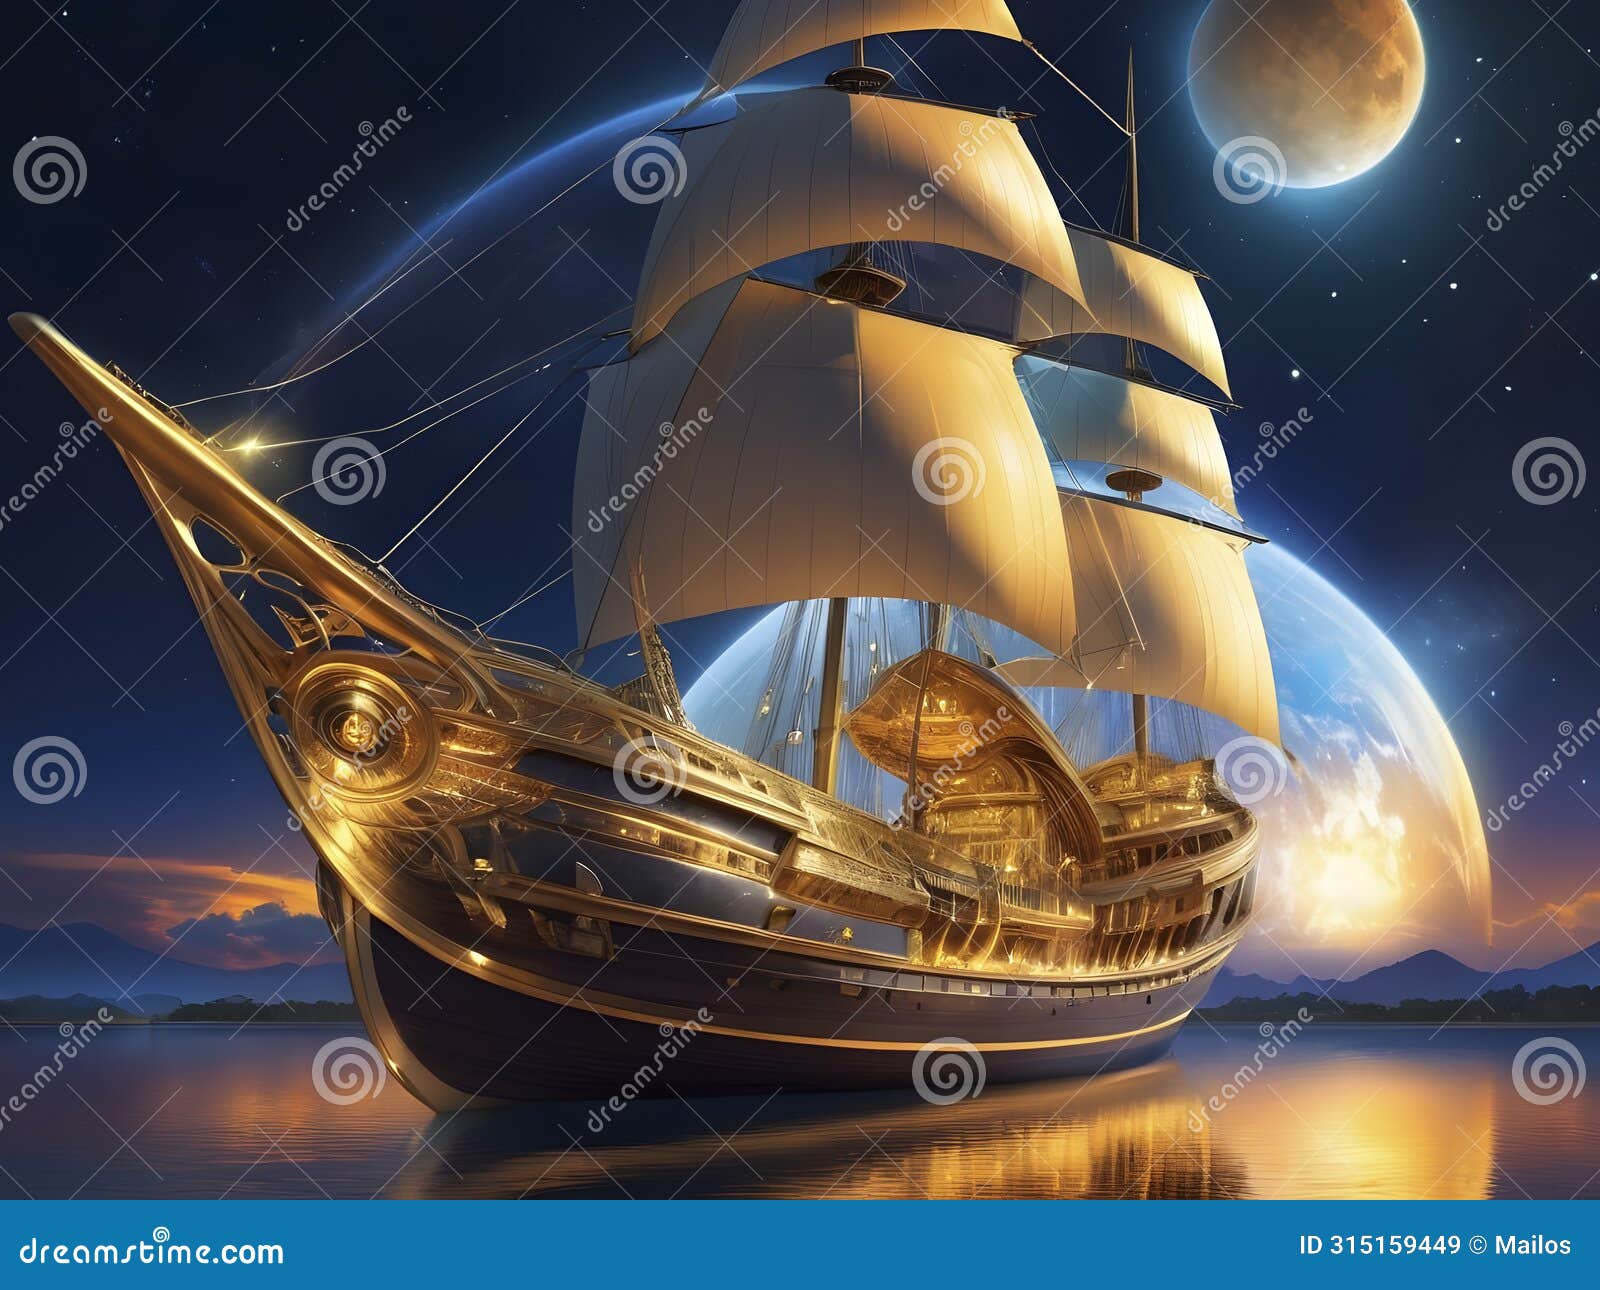 golden horizons. a futuristic solar sailer illuminates the cosmos.